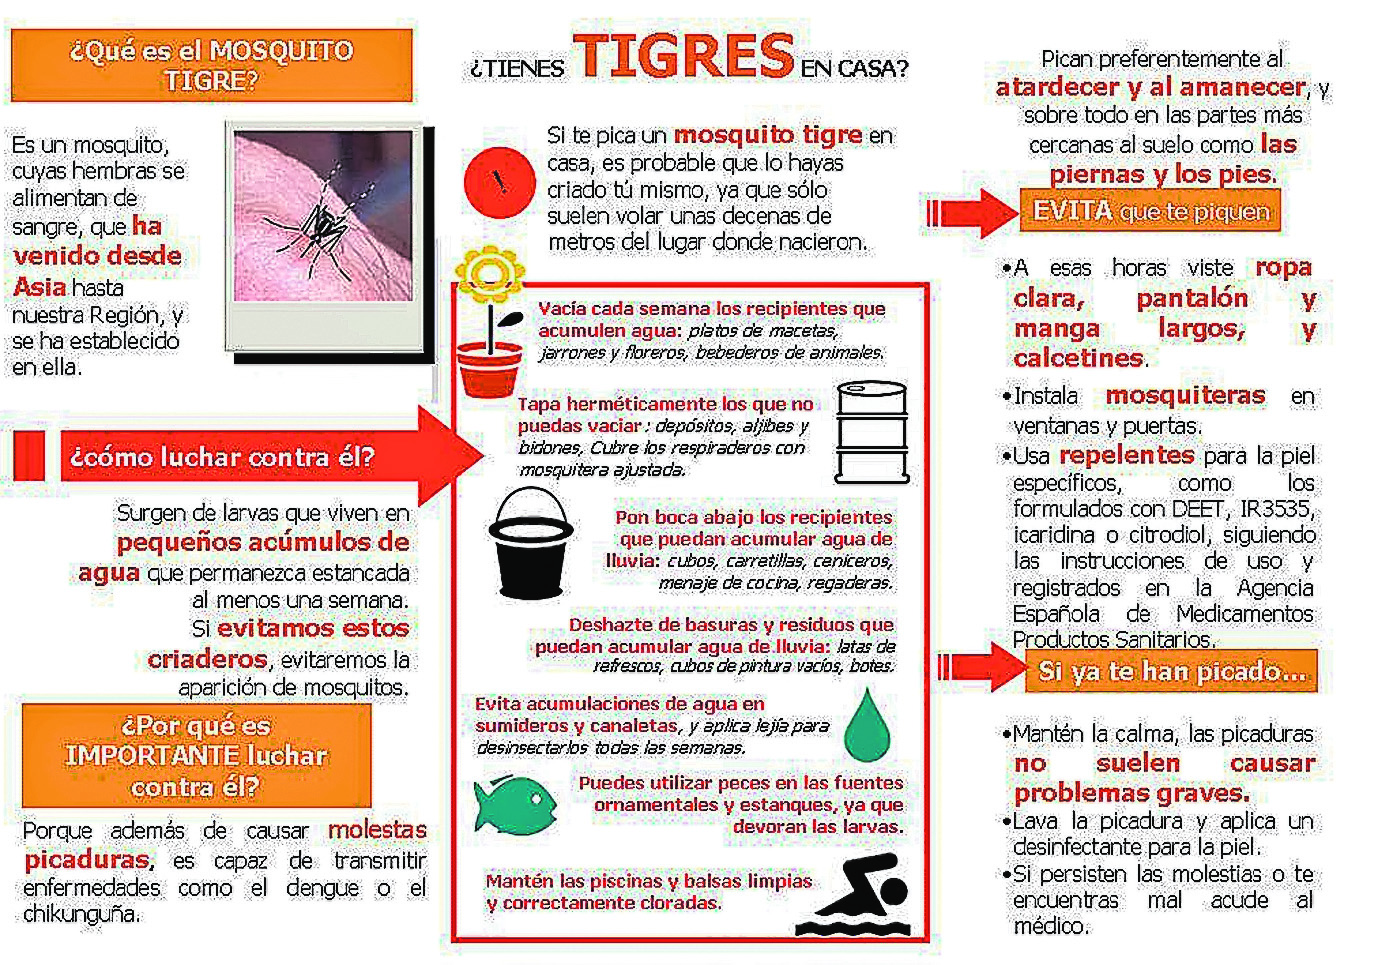 Se solicita la colaboración ciudadana para que no se expanda el mosquito tigre